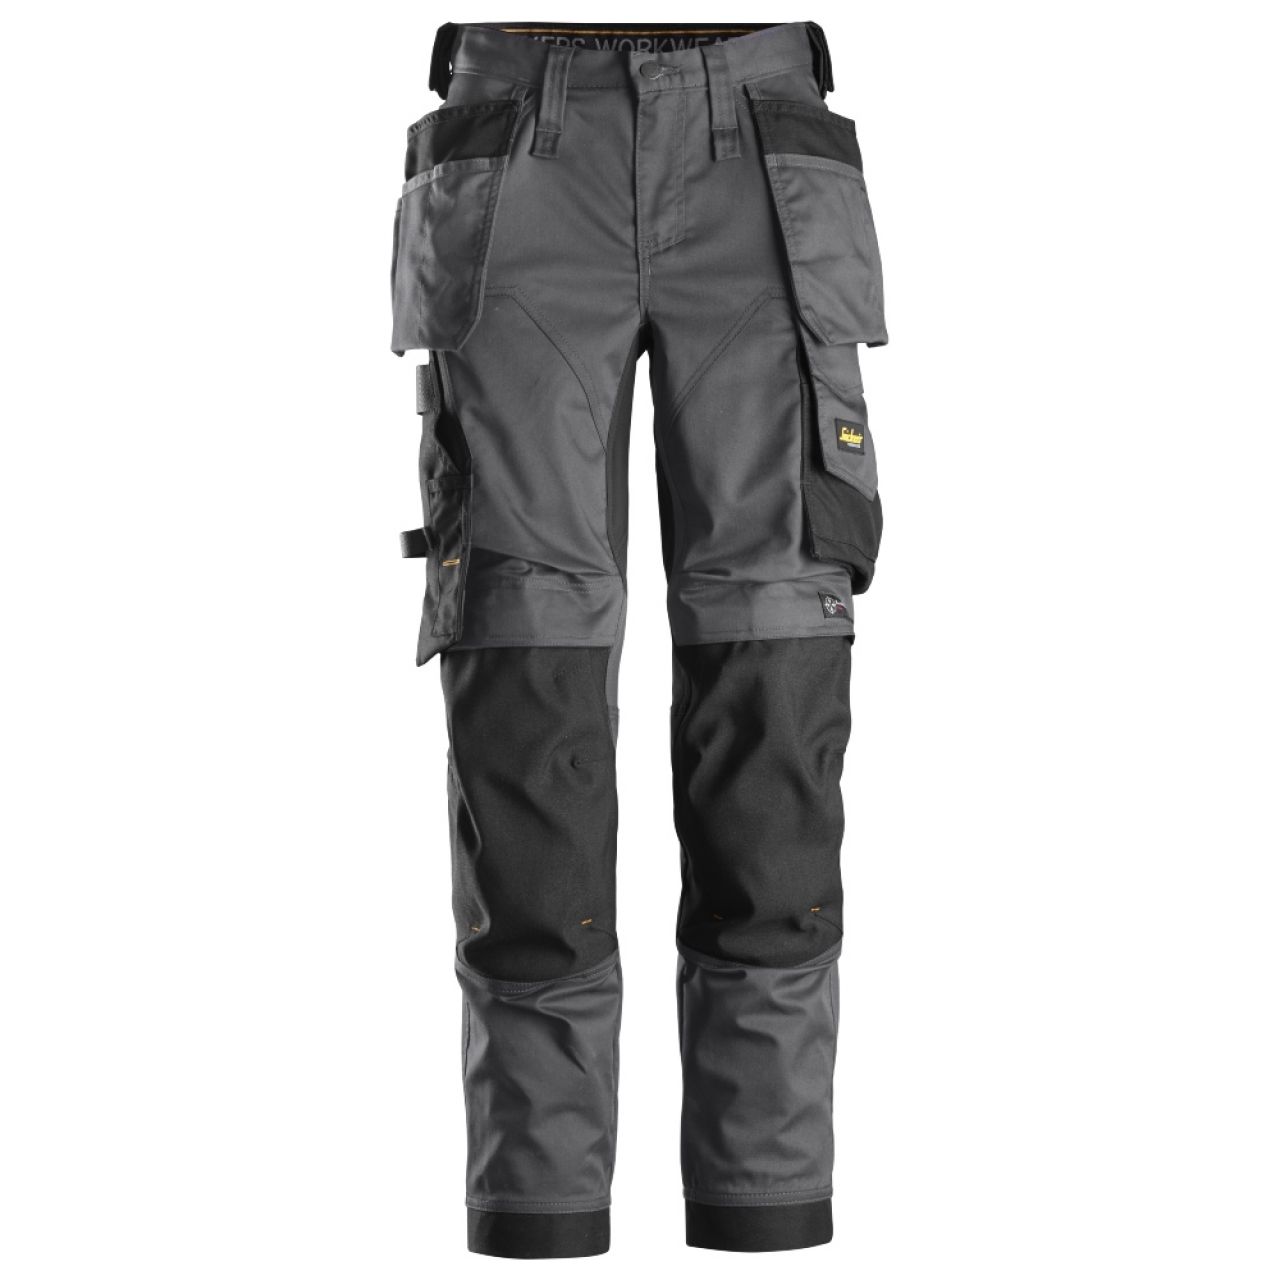 6247 Pantalones largos de trabajo elásticos para mujer con bolsillos flotantes AllroundWork gris acero-negro talla 48